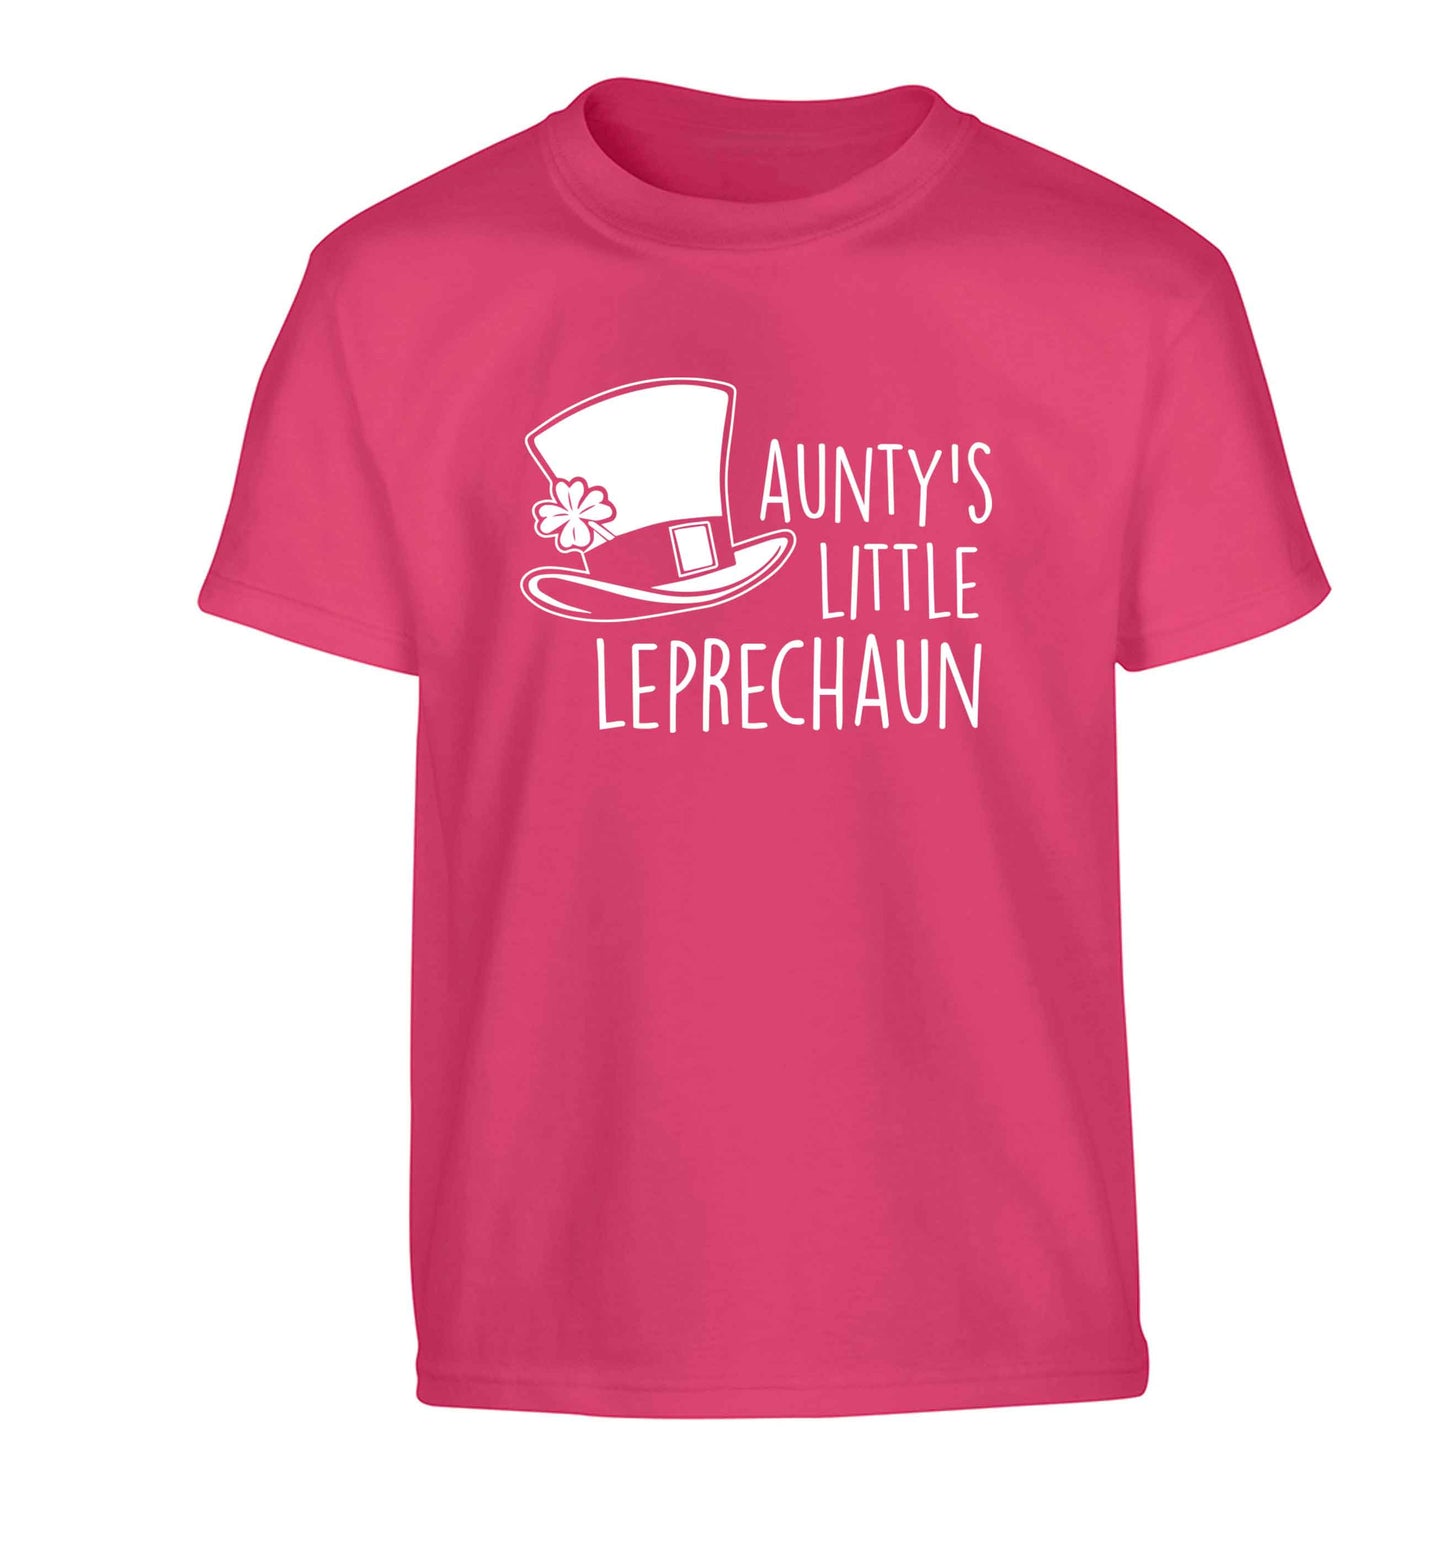 Aunty's little leprechaun Children's pink Tshirt 12-13 Years